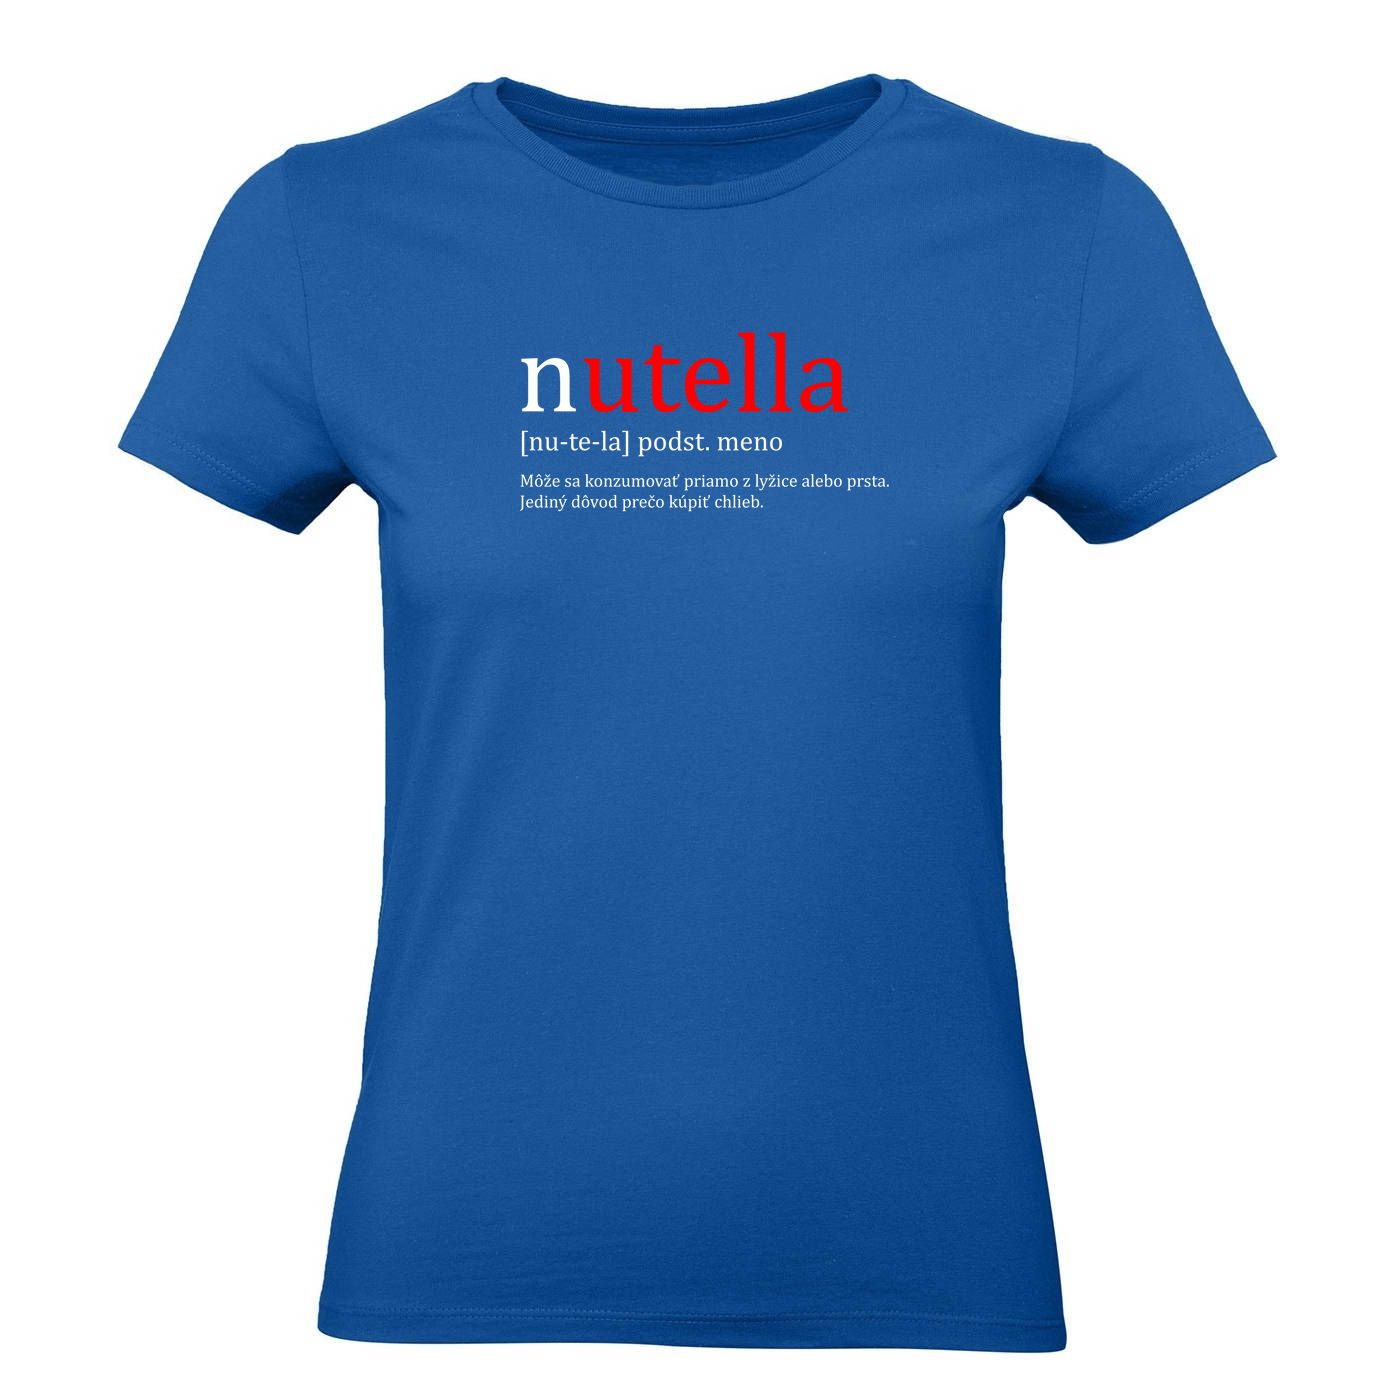 Ženské tričko - NUTELLA - Môže sa konzumovať priamo z lyžice